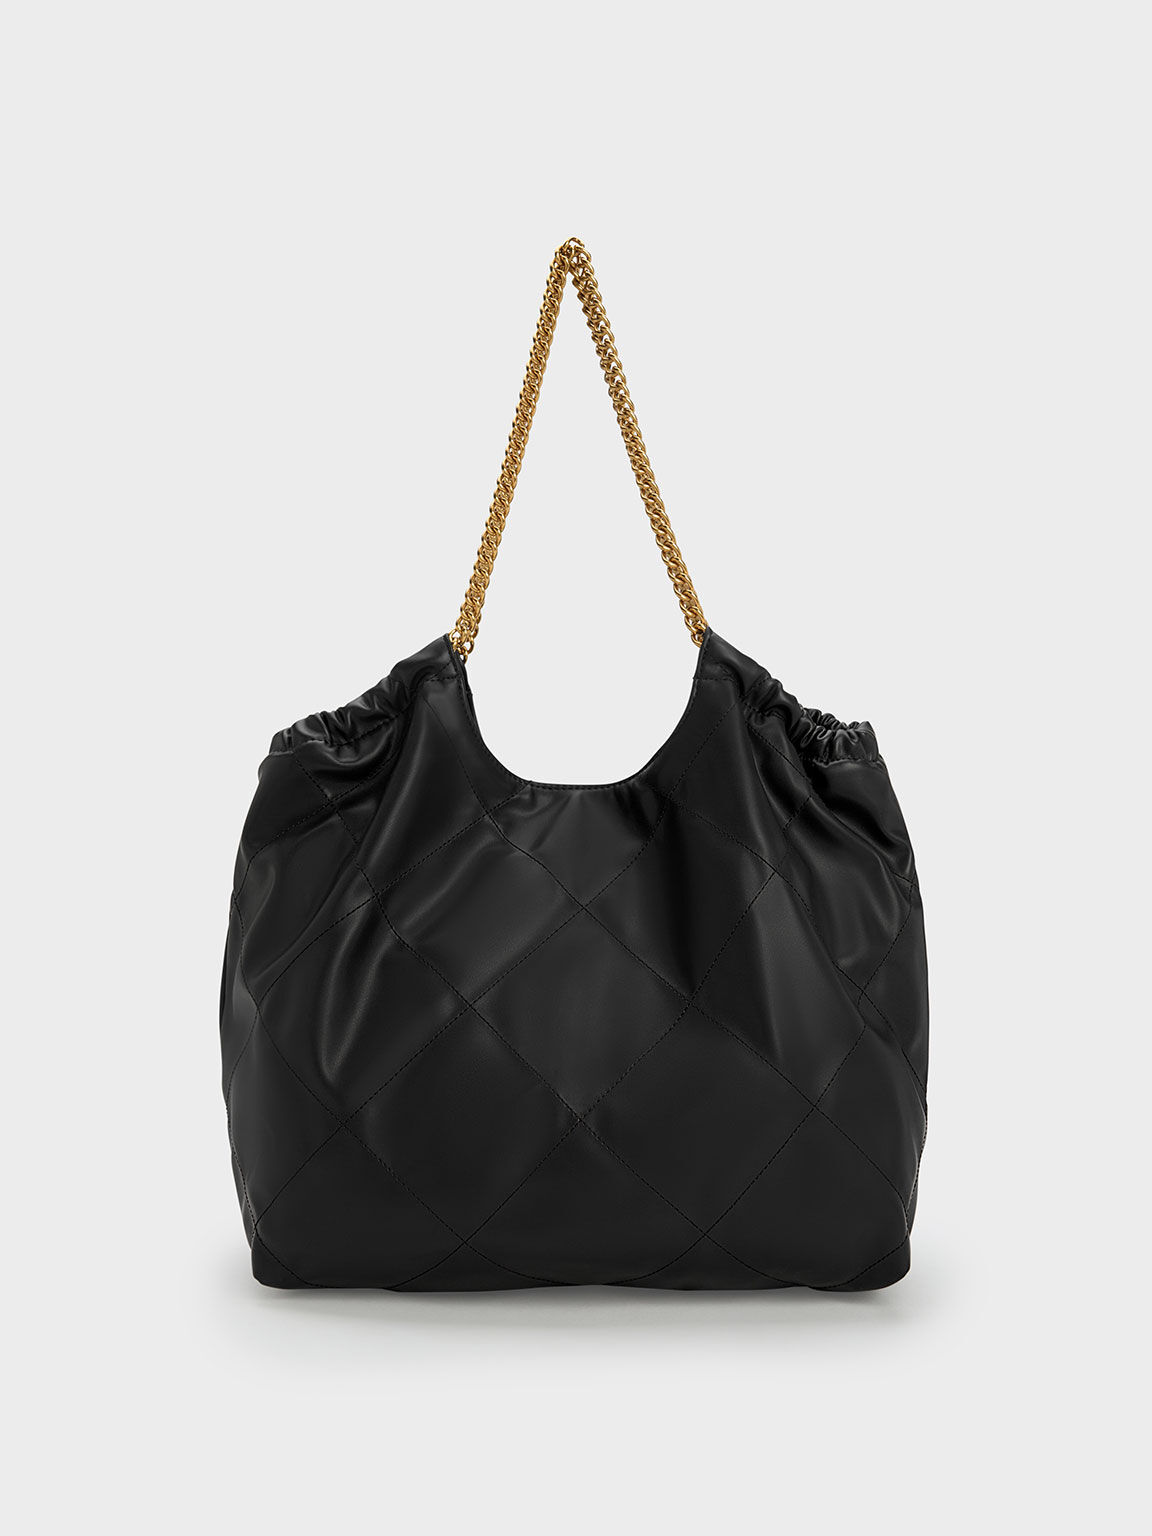 Braided Handle Tote Bag, Black, hi-res